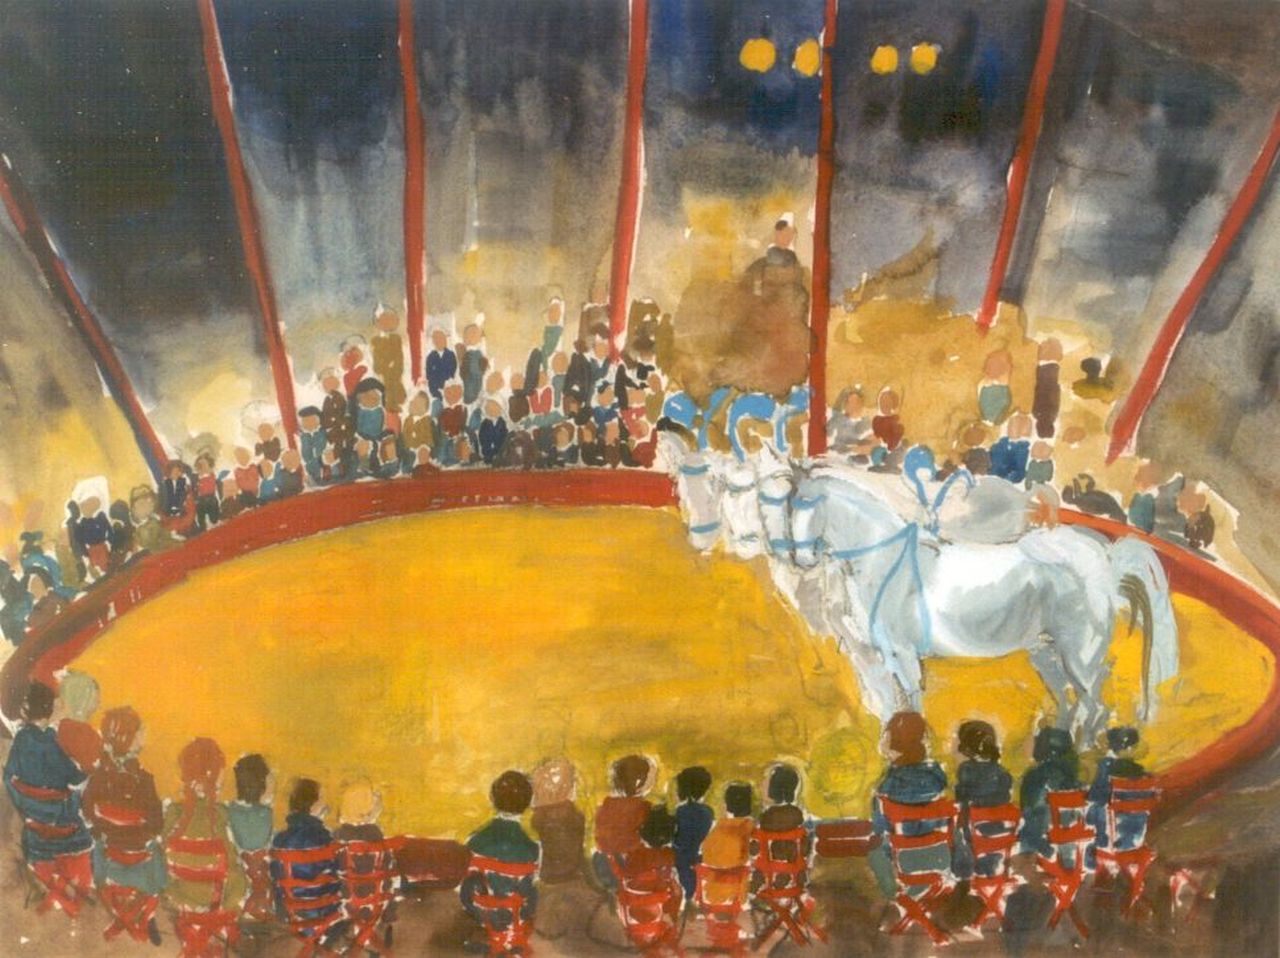 Annemarie Eilers | Circus act, Aquarell auf Papier, 51,0 x 67,5 cm, signed l.r.